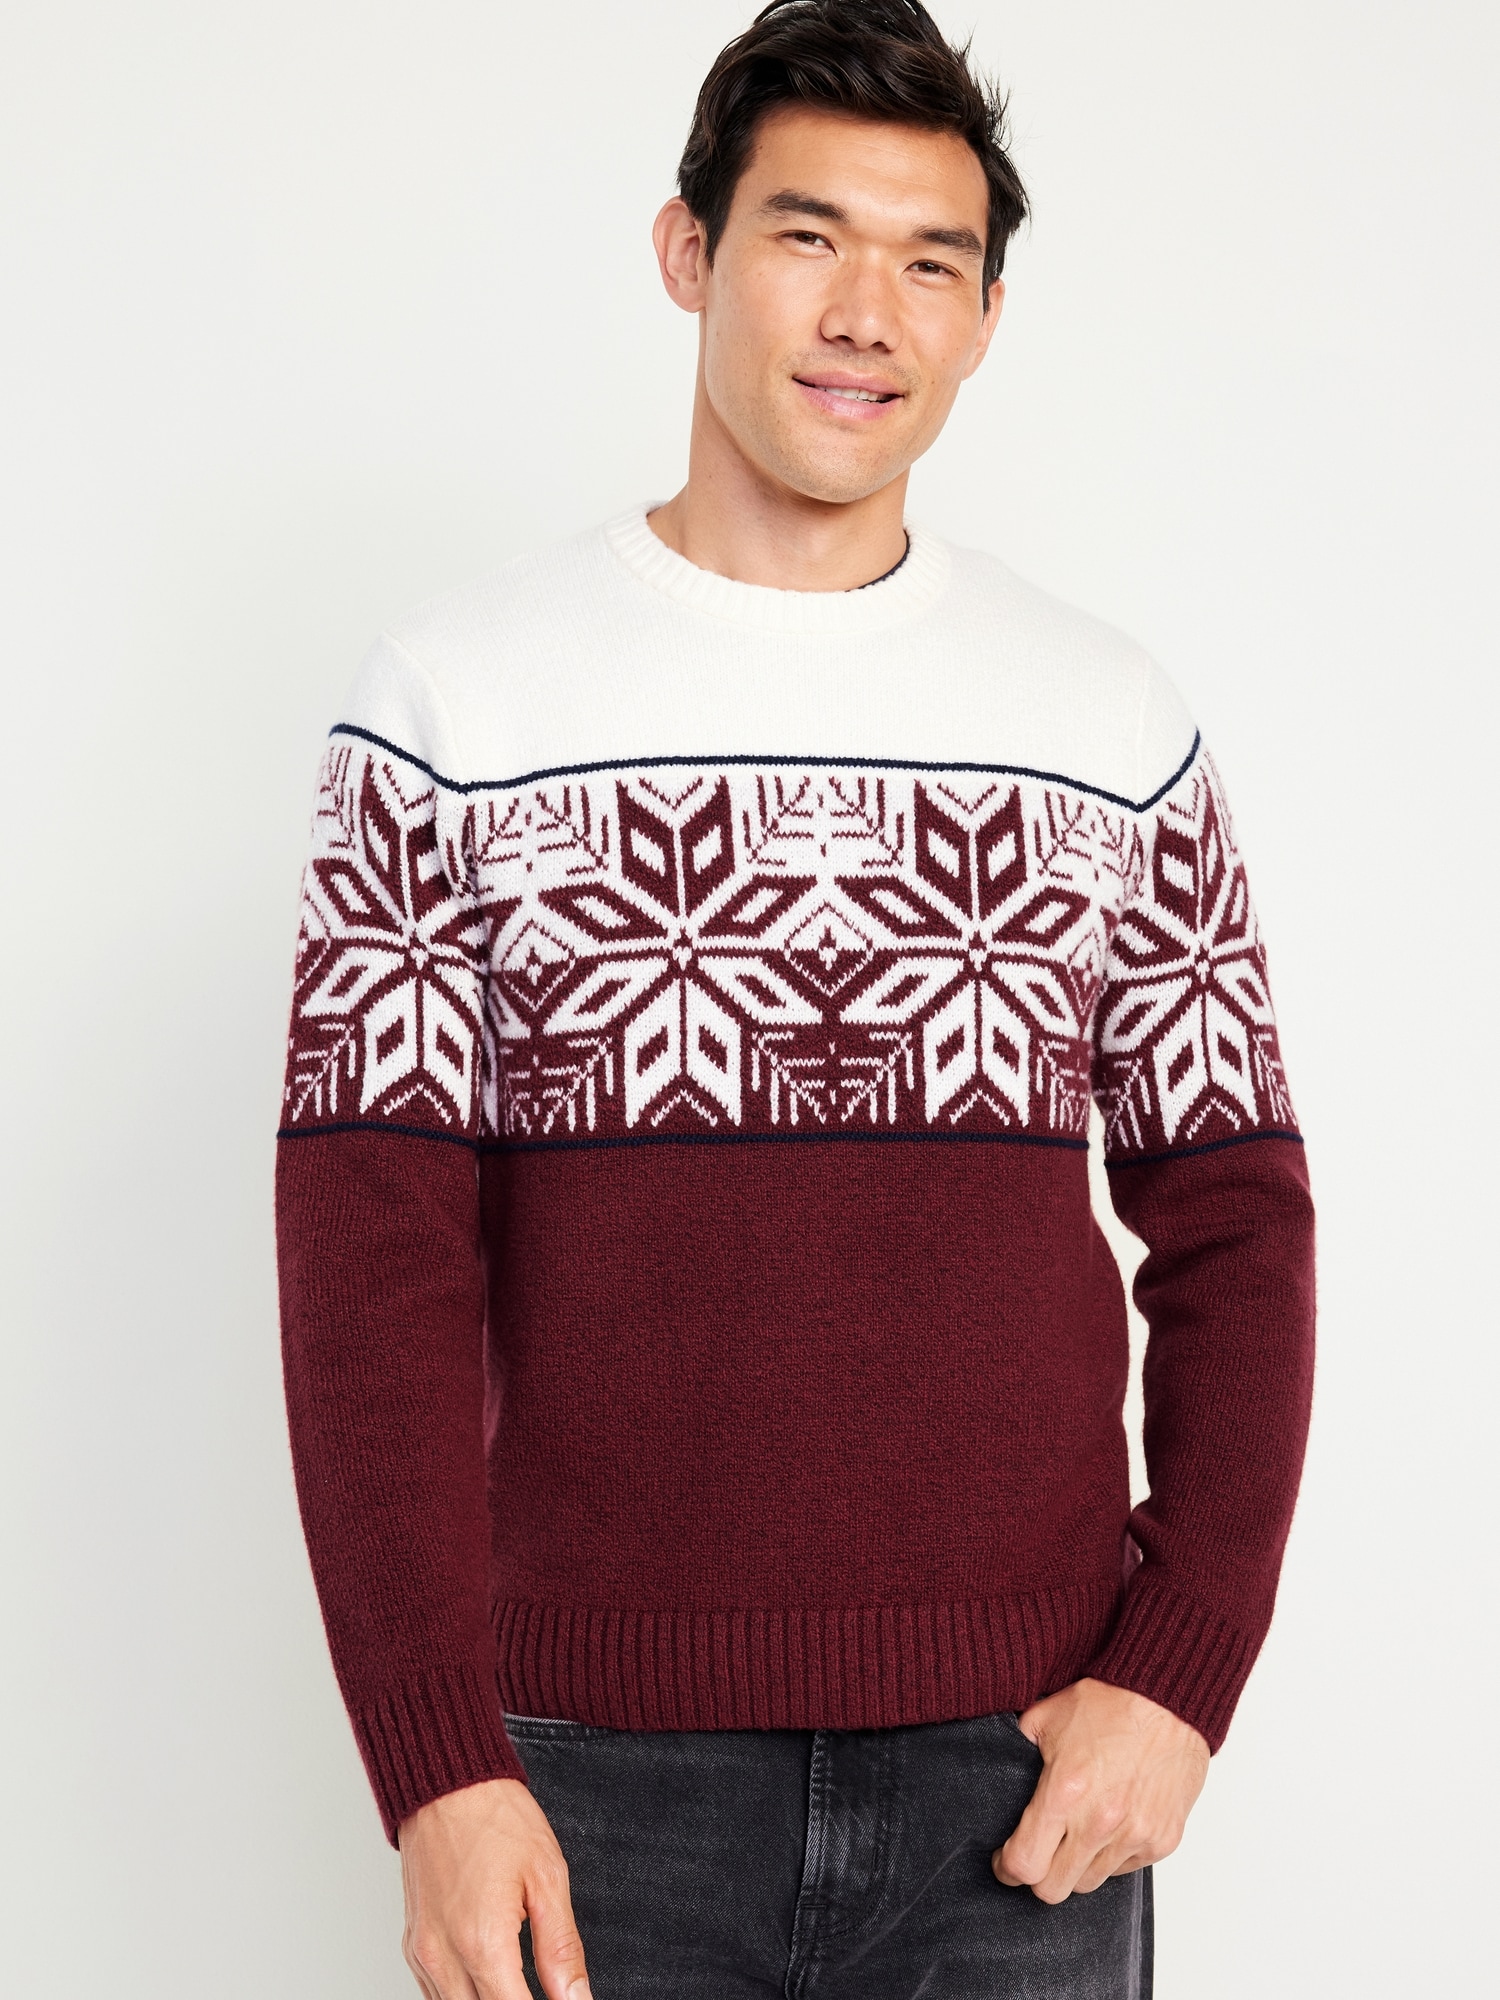 Sos Sportswear Of Sweden mens knitted Jumper Sweatshirt 80%LAMBSWOOL. L.  GREY 